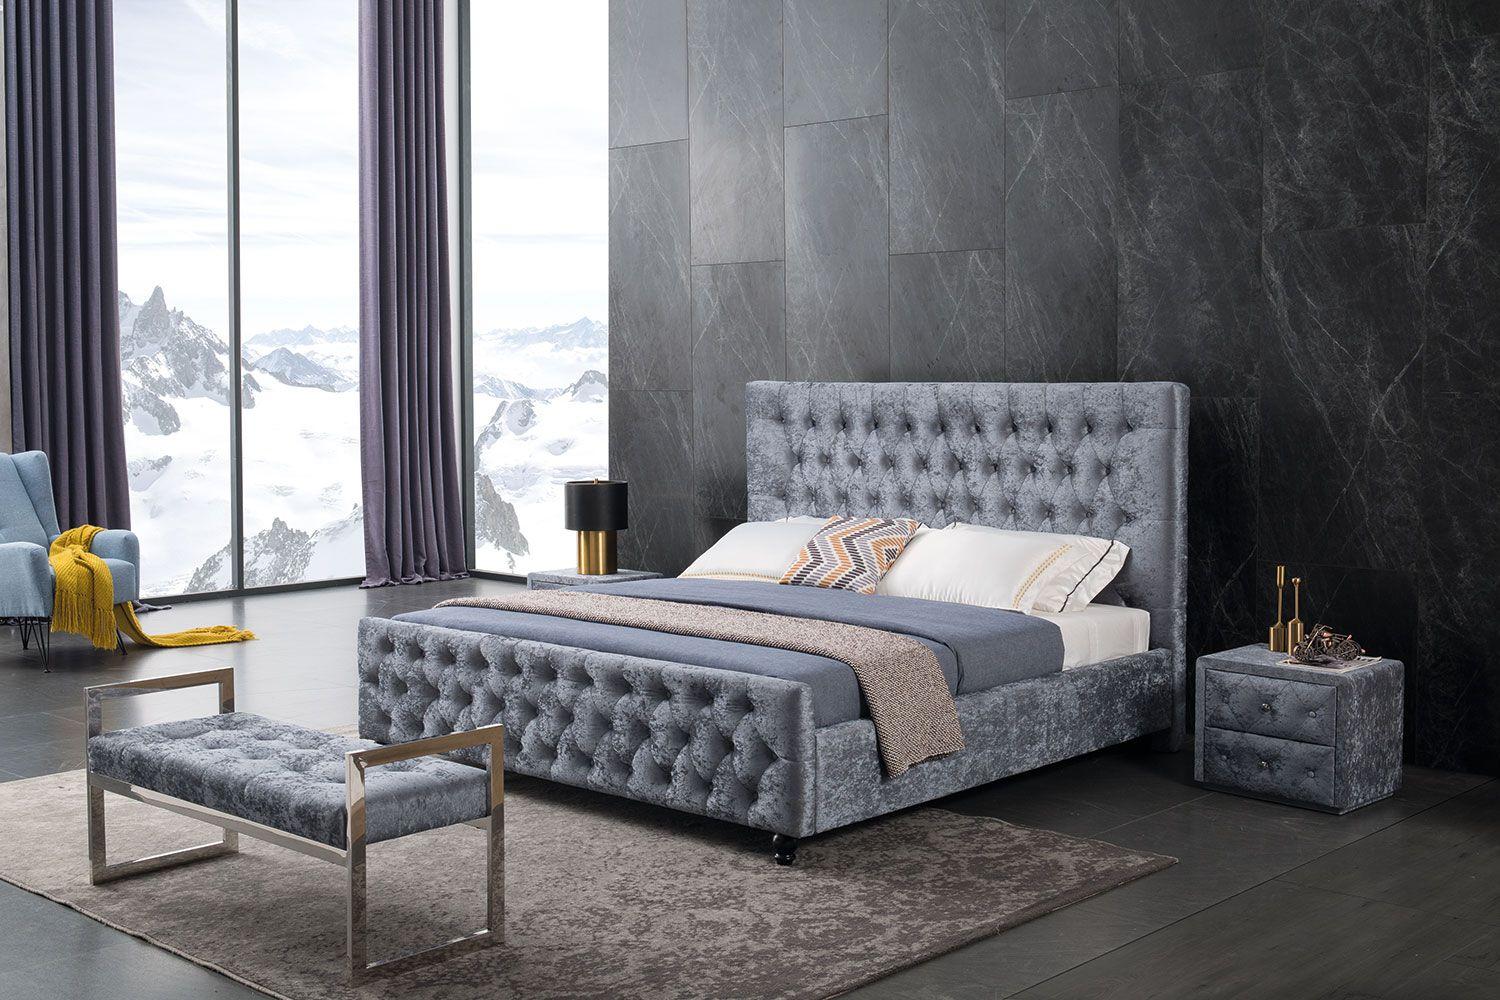 

    
American Eagle Furniture B-D073-Q Platform Bed Gray B-D073-Q
